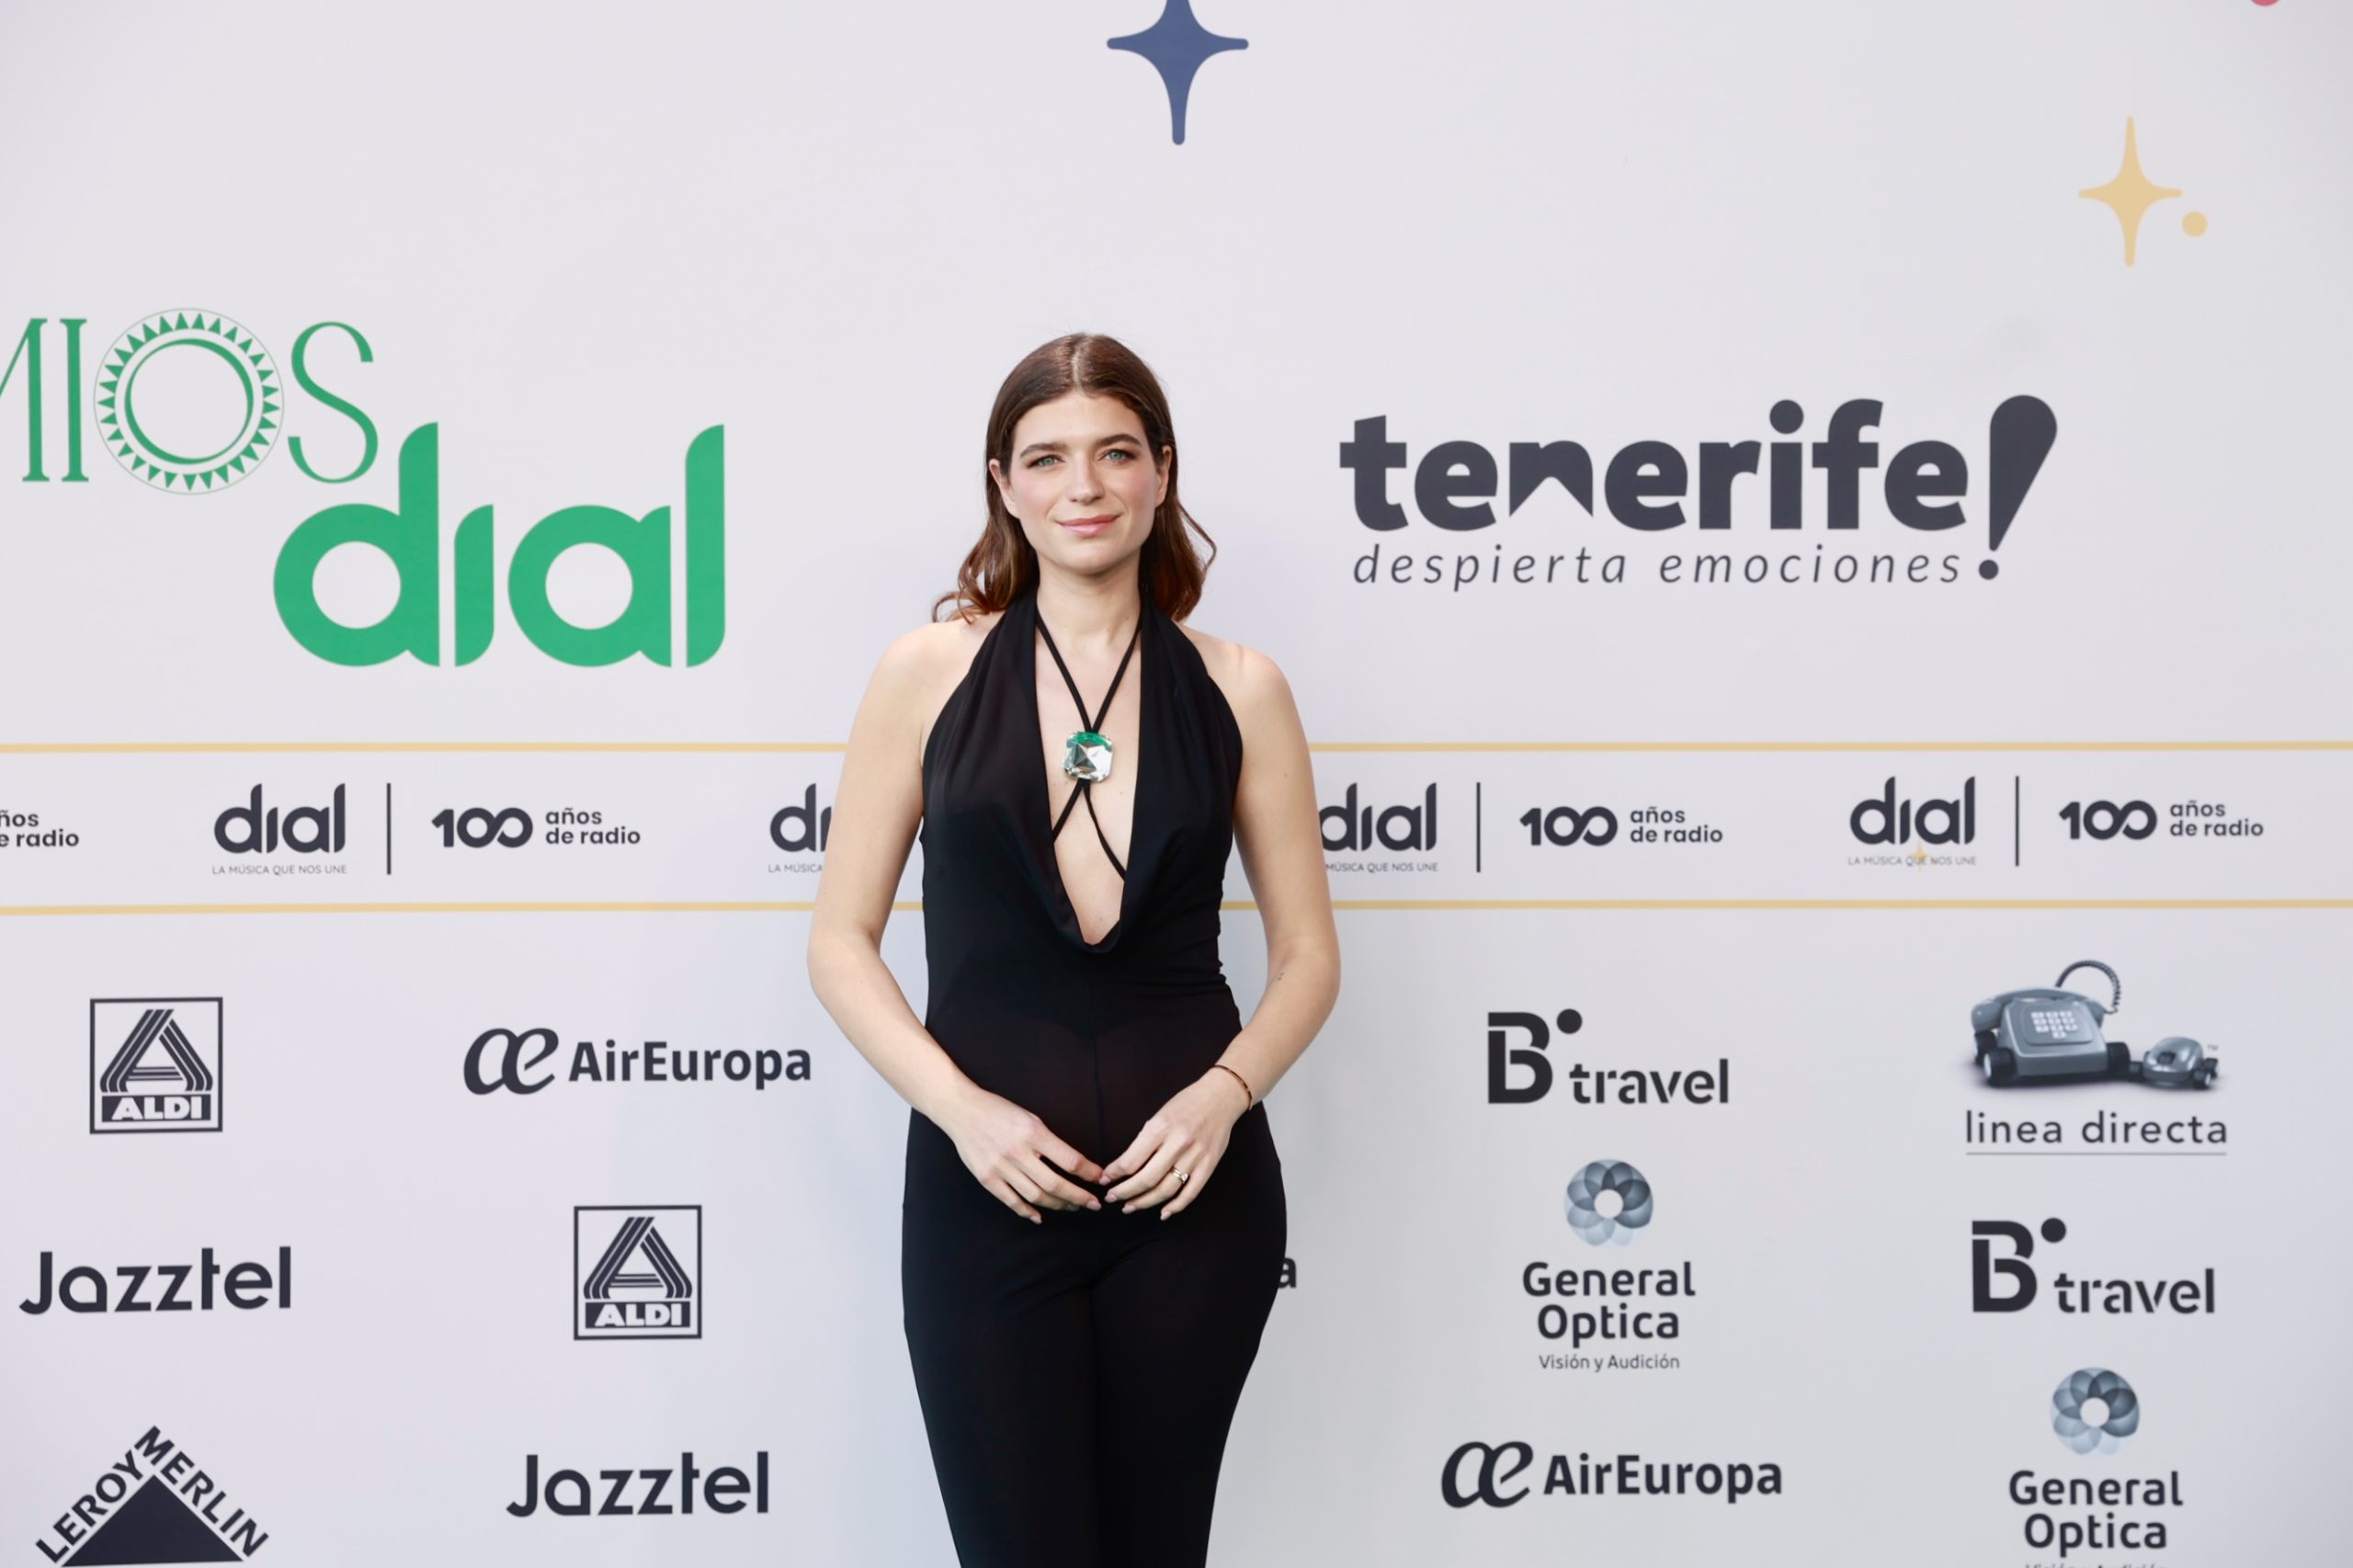 La tiktoker Raquel Martínez Castro @bonbonreich en la alfombra verde de Premios Dial Tenerife